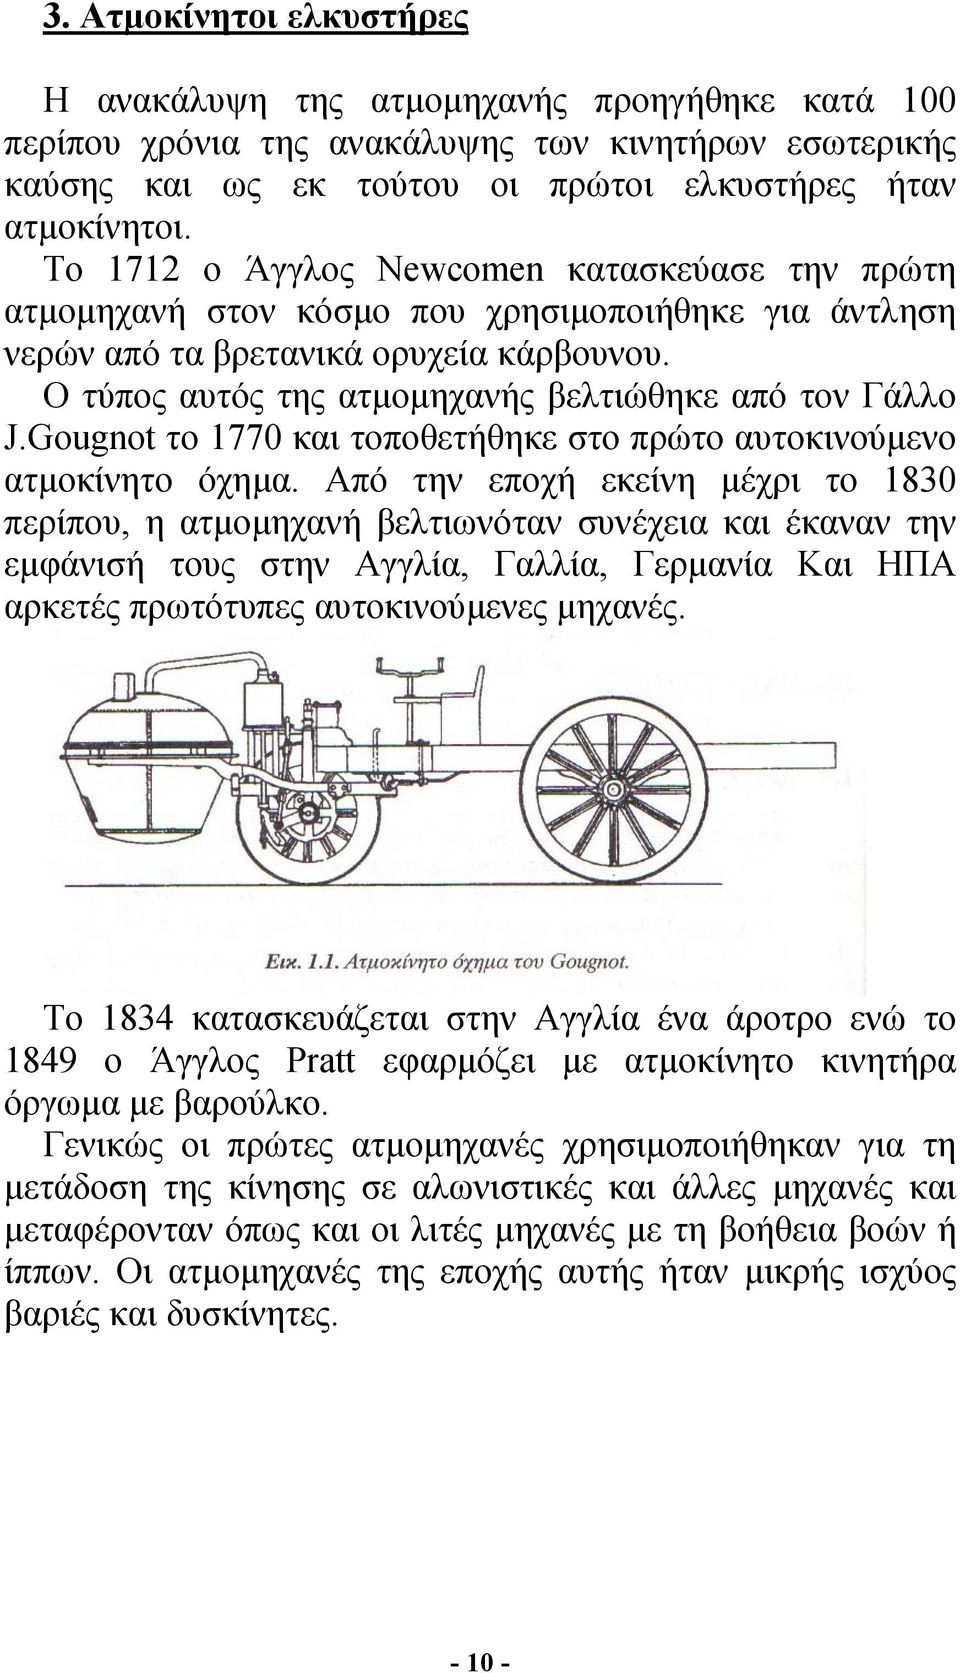 Ο τύπος αυτός της ατµοµηχανής βελτιώθηκε από τον Γάλλο J.Gougnot το 1770 και τοποθετήθηκε στο πρώτο αυτοκινούµενο ατµοκίνητο όχηµα.